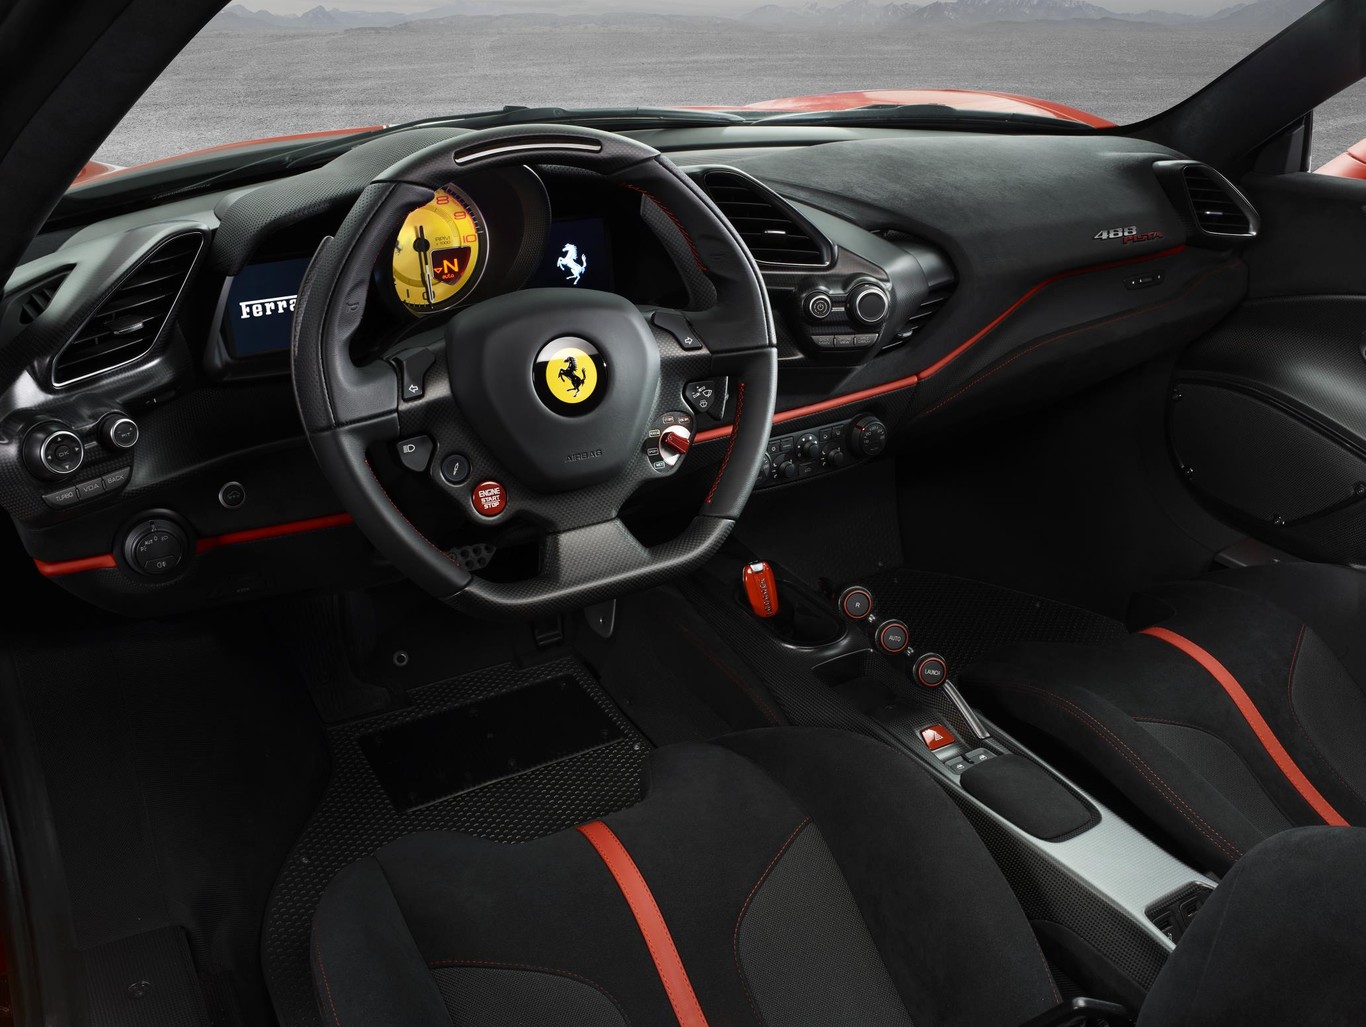 Ferrari 488 Pista interior